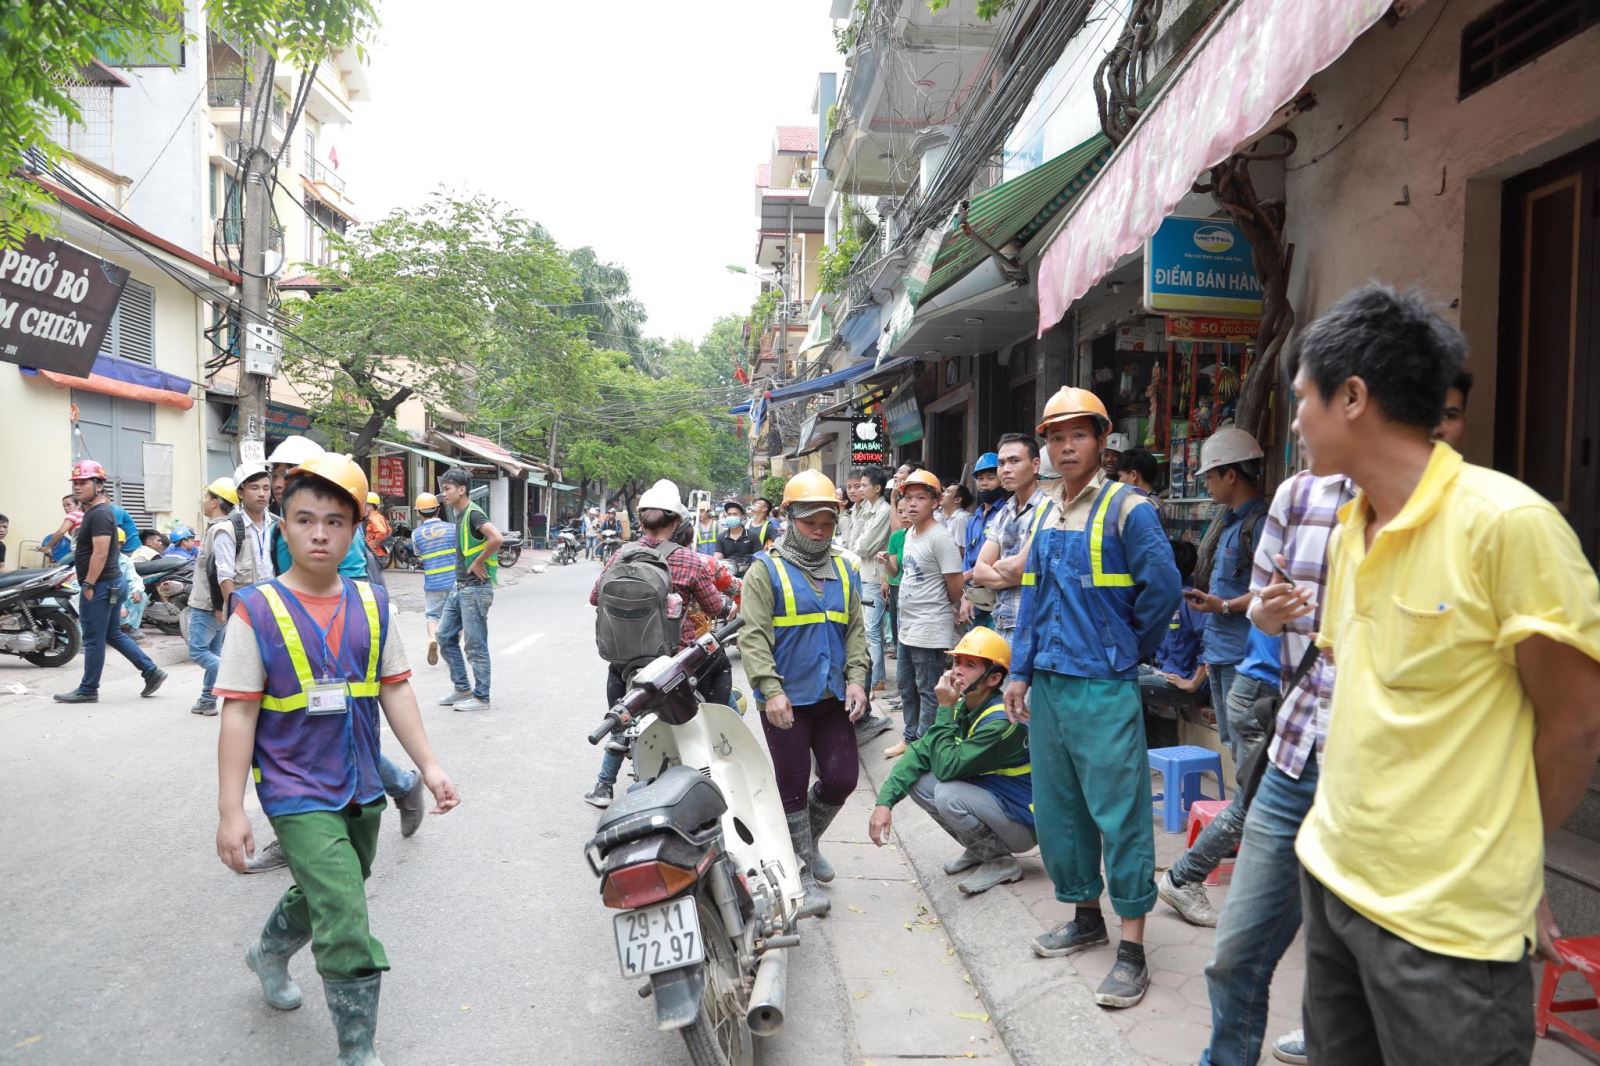 Cảnh sát PCCC Hà Nội: 'Không có chuyện nghiêng lún tòa nhà tại Lương Yên do dư chấn động đất'